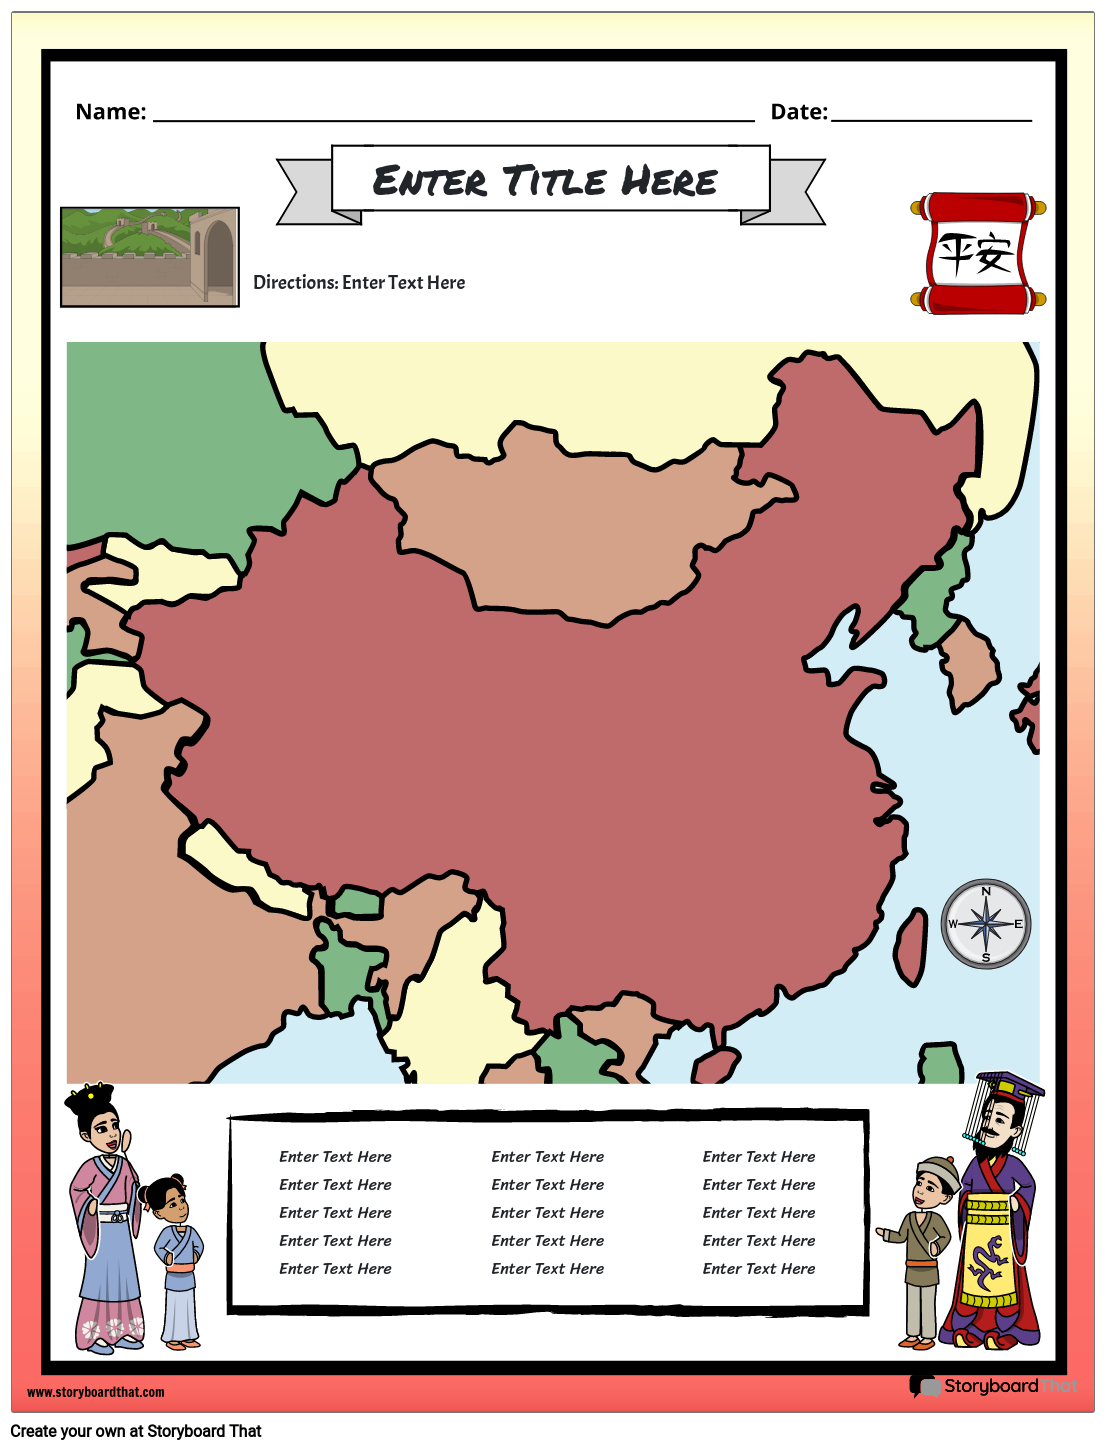 Ancient China Map